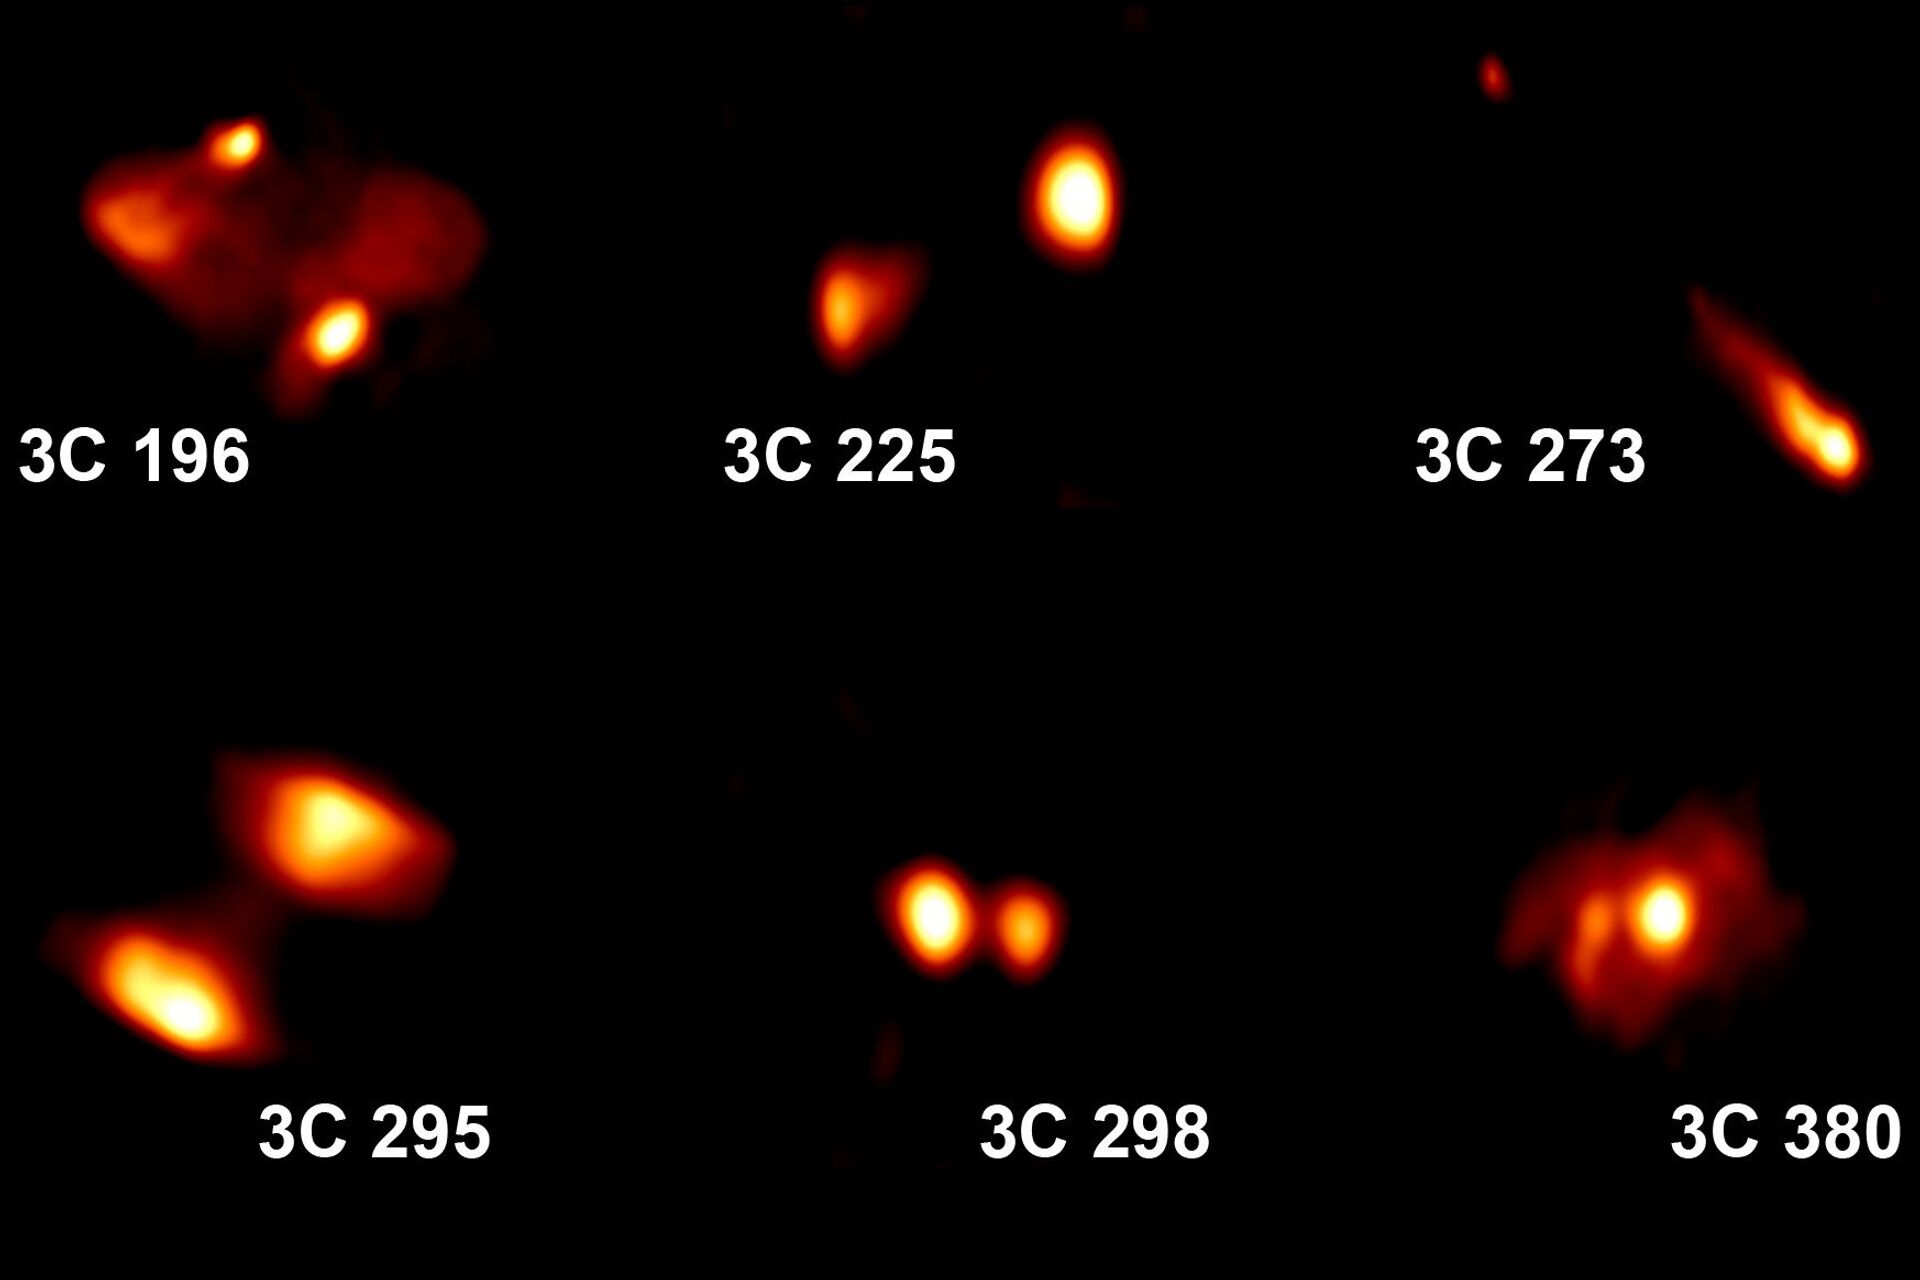 Cientistas captam IMAGENS extraordinárias de galáxias distantes - Sputnik Brasil, 1920, 20.08.2021